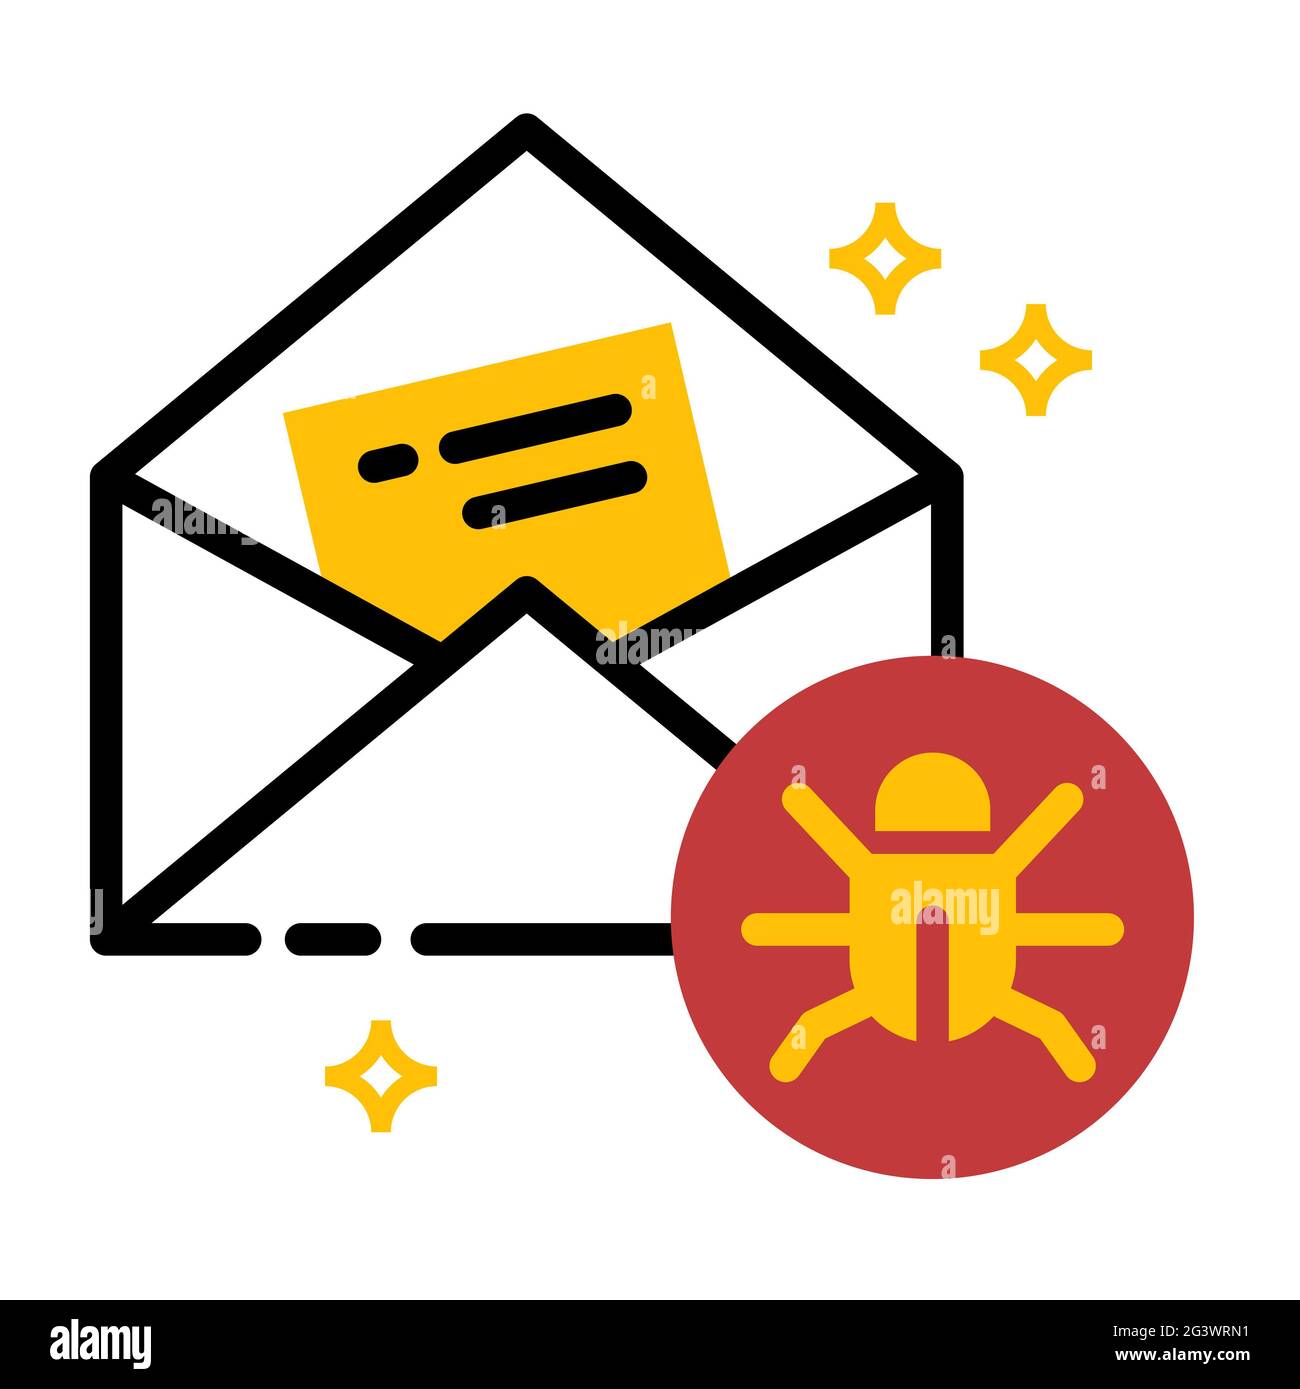 Abbildung zum Design des Mail-Fehlersymbols Stockfoto